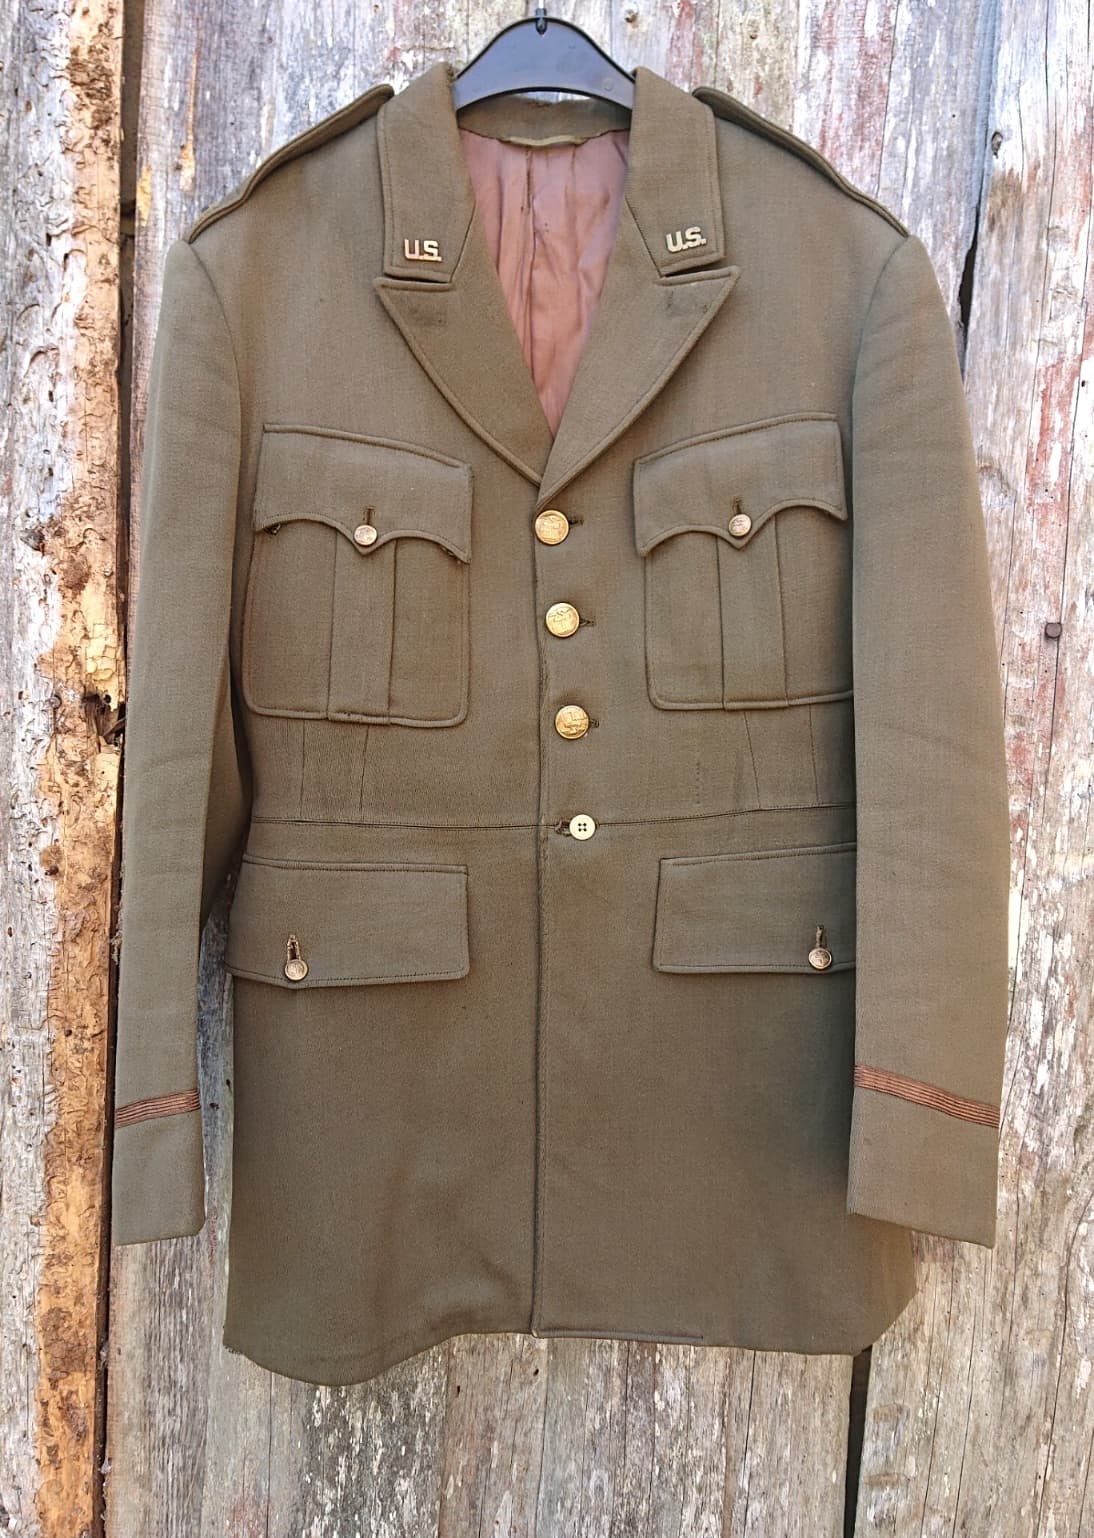 HdS Militaria Veste officier US Génie / Engineer Officer dress od51